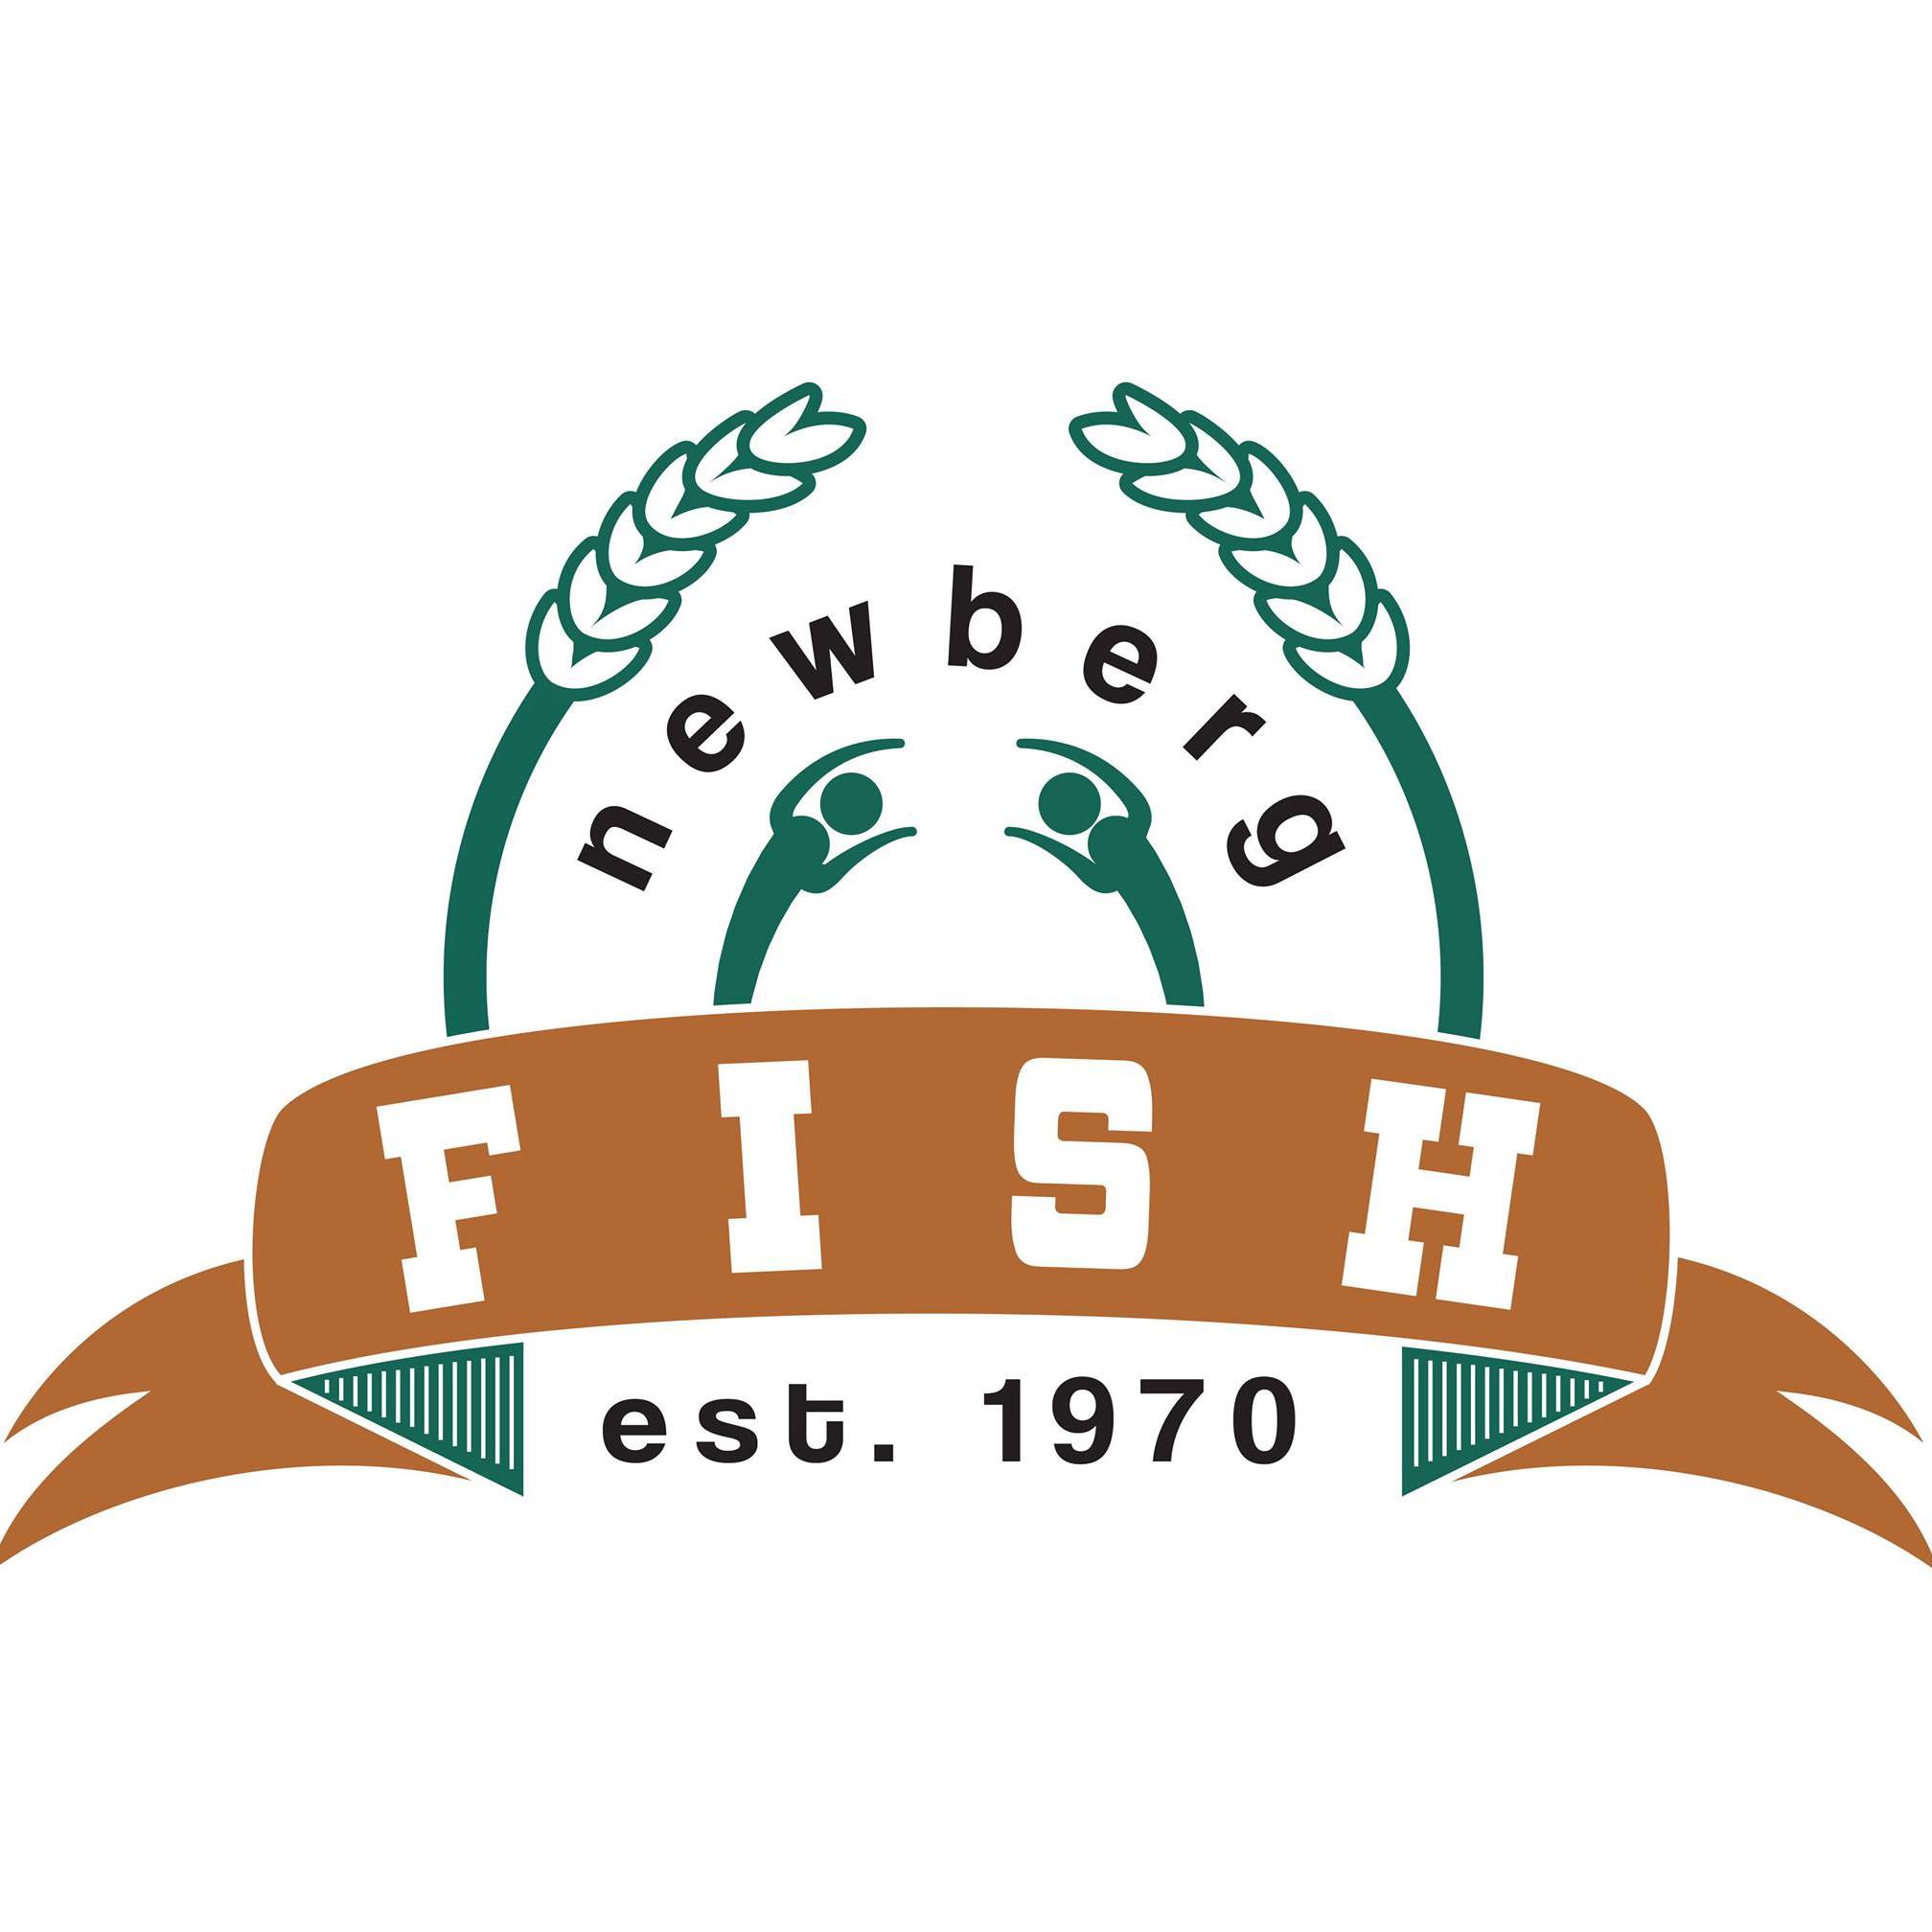 Newberg FISH Food Pantry